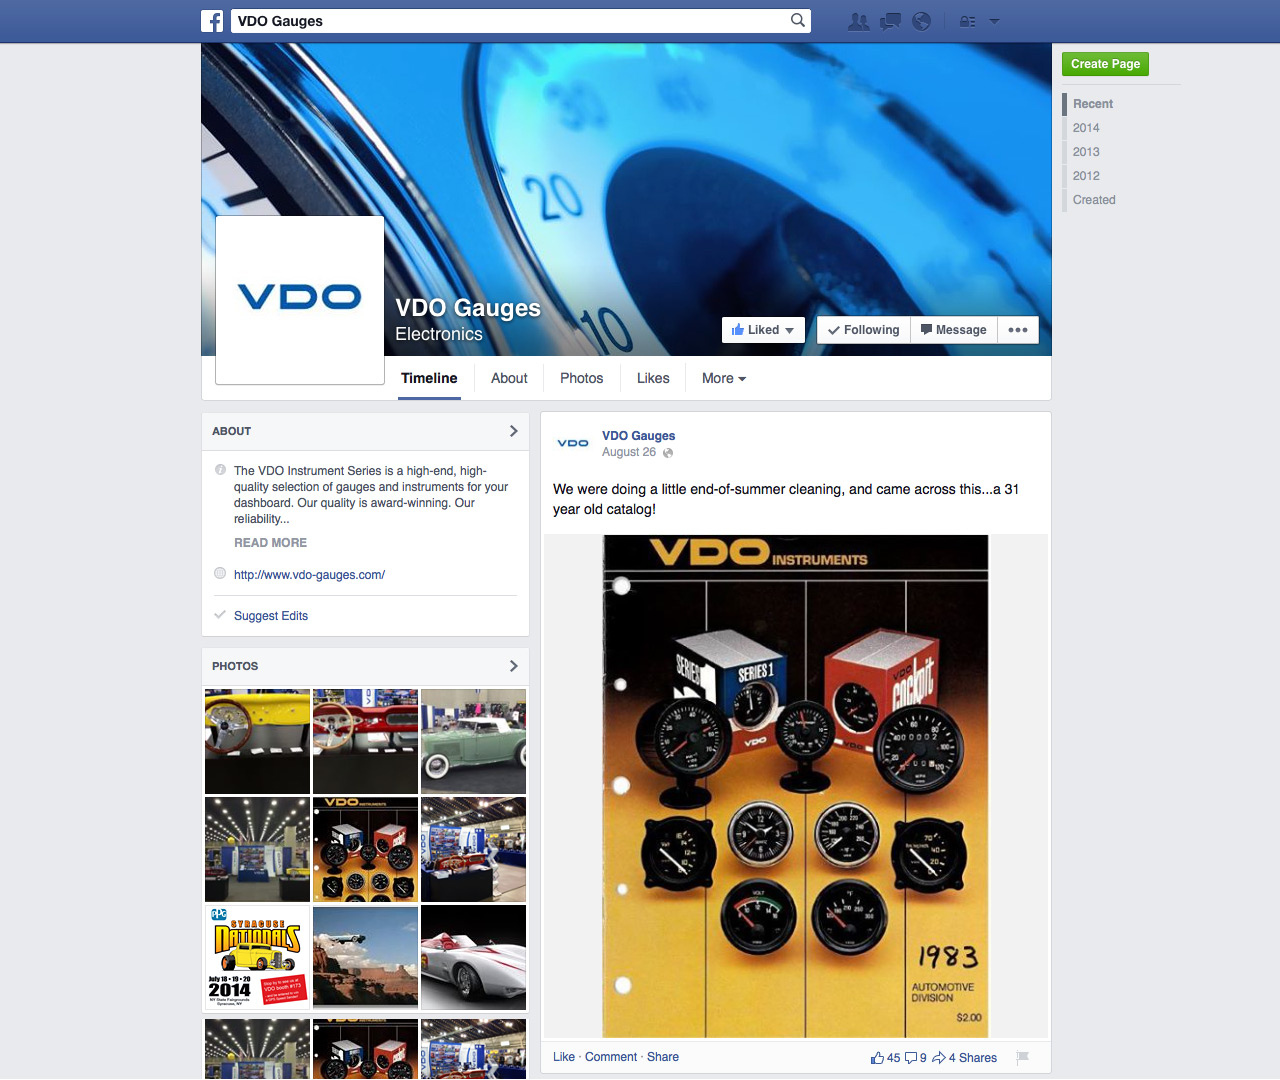 VDO Gauges Facebook Page